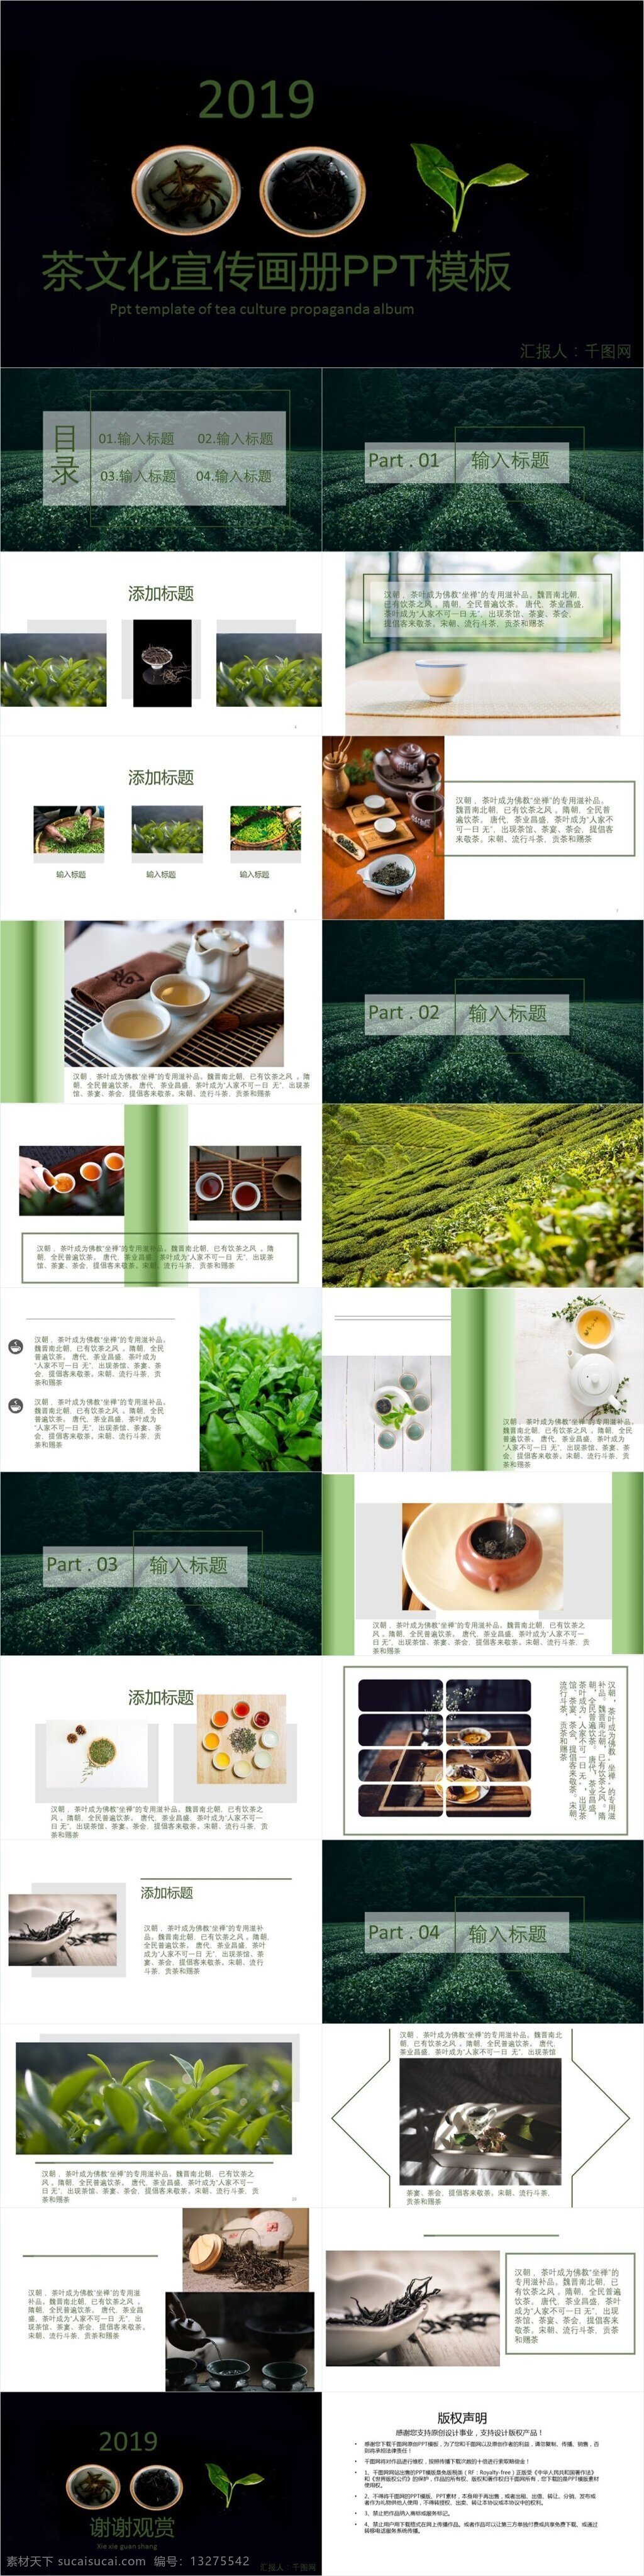 绿色 茶文化 宣传画册 茶 传统文化 宣传 画册 通用模板